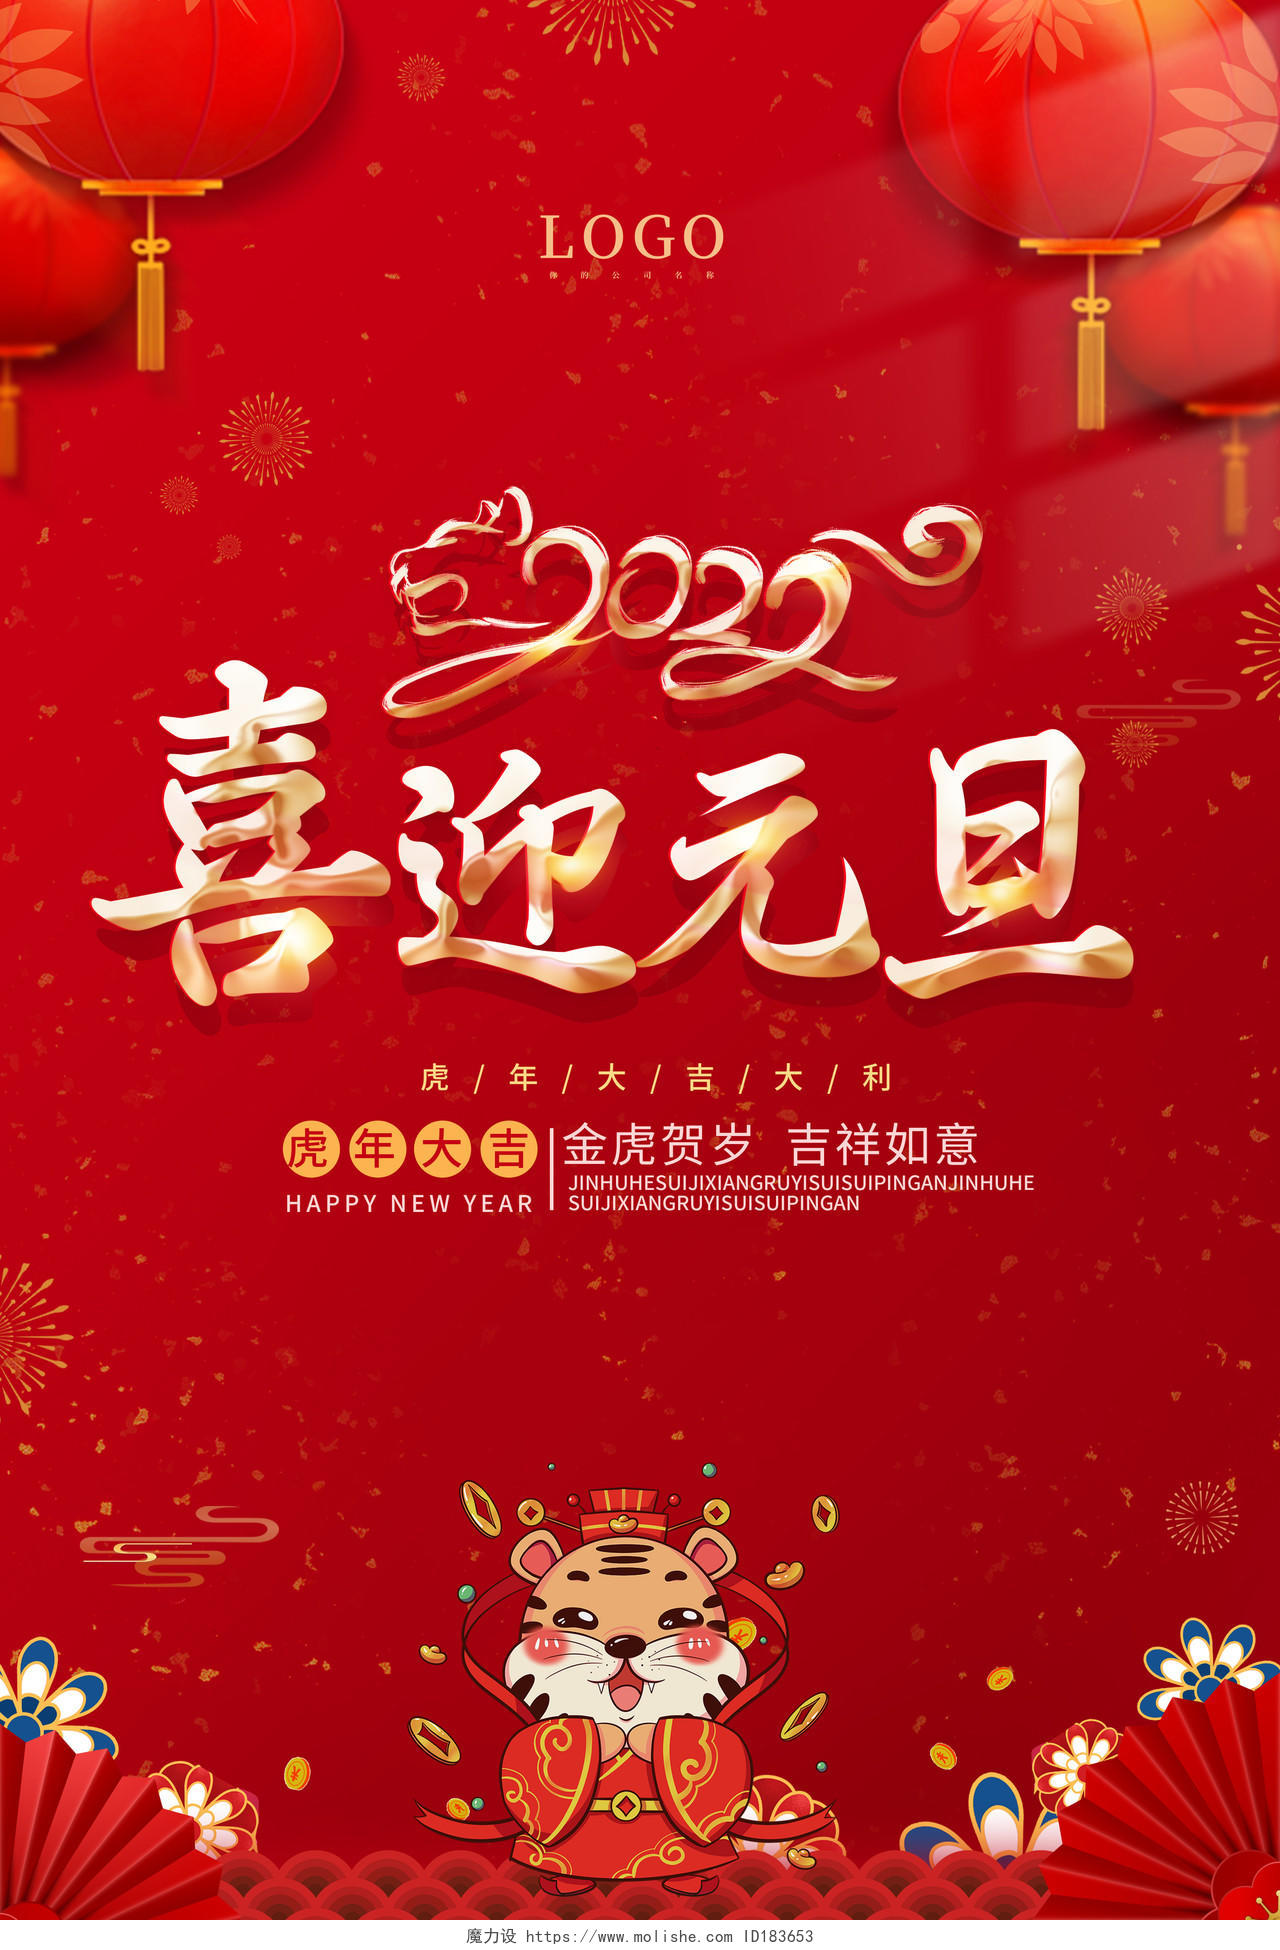 红色中国风2022喜迎元旦元旦节海报2021元旦新年元旦节